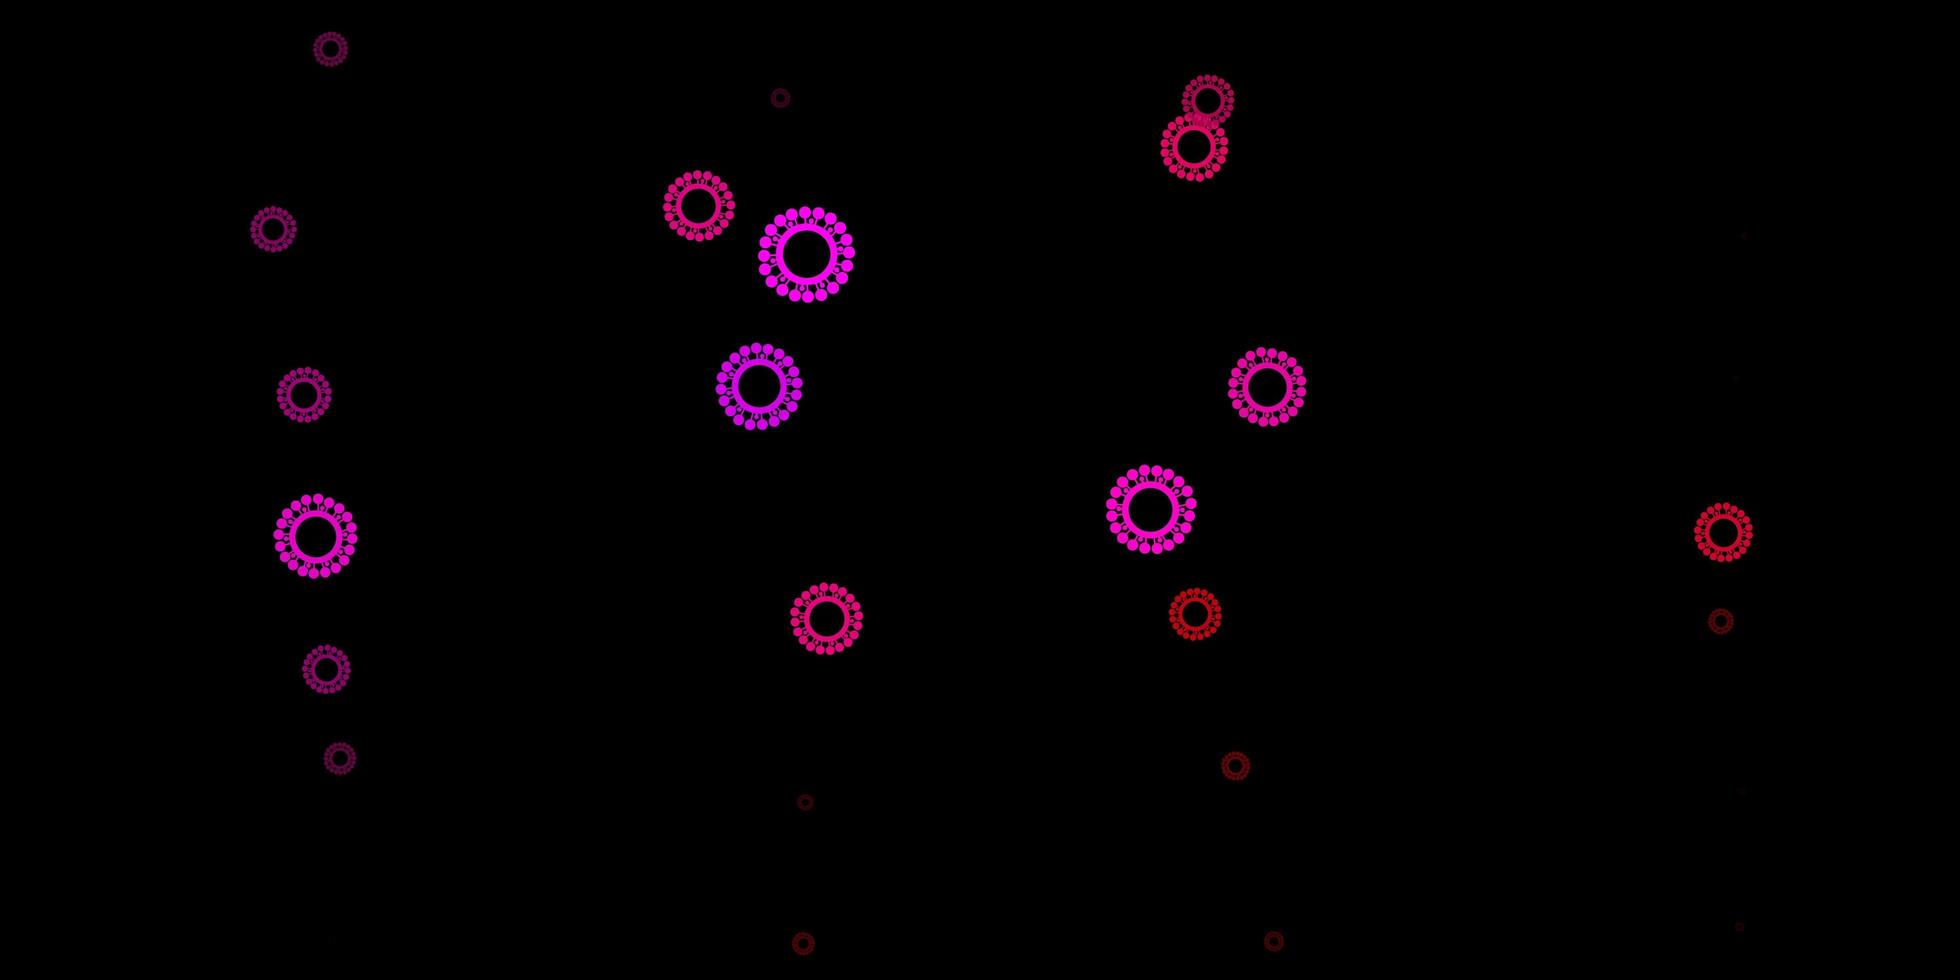 trama vettoriale rosa scuro con simboli di malattia.